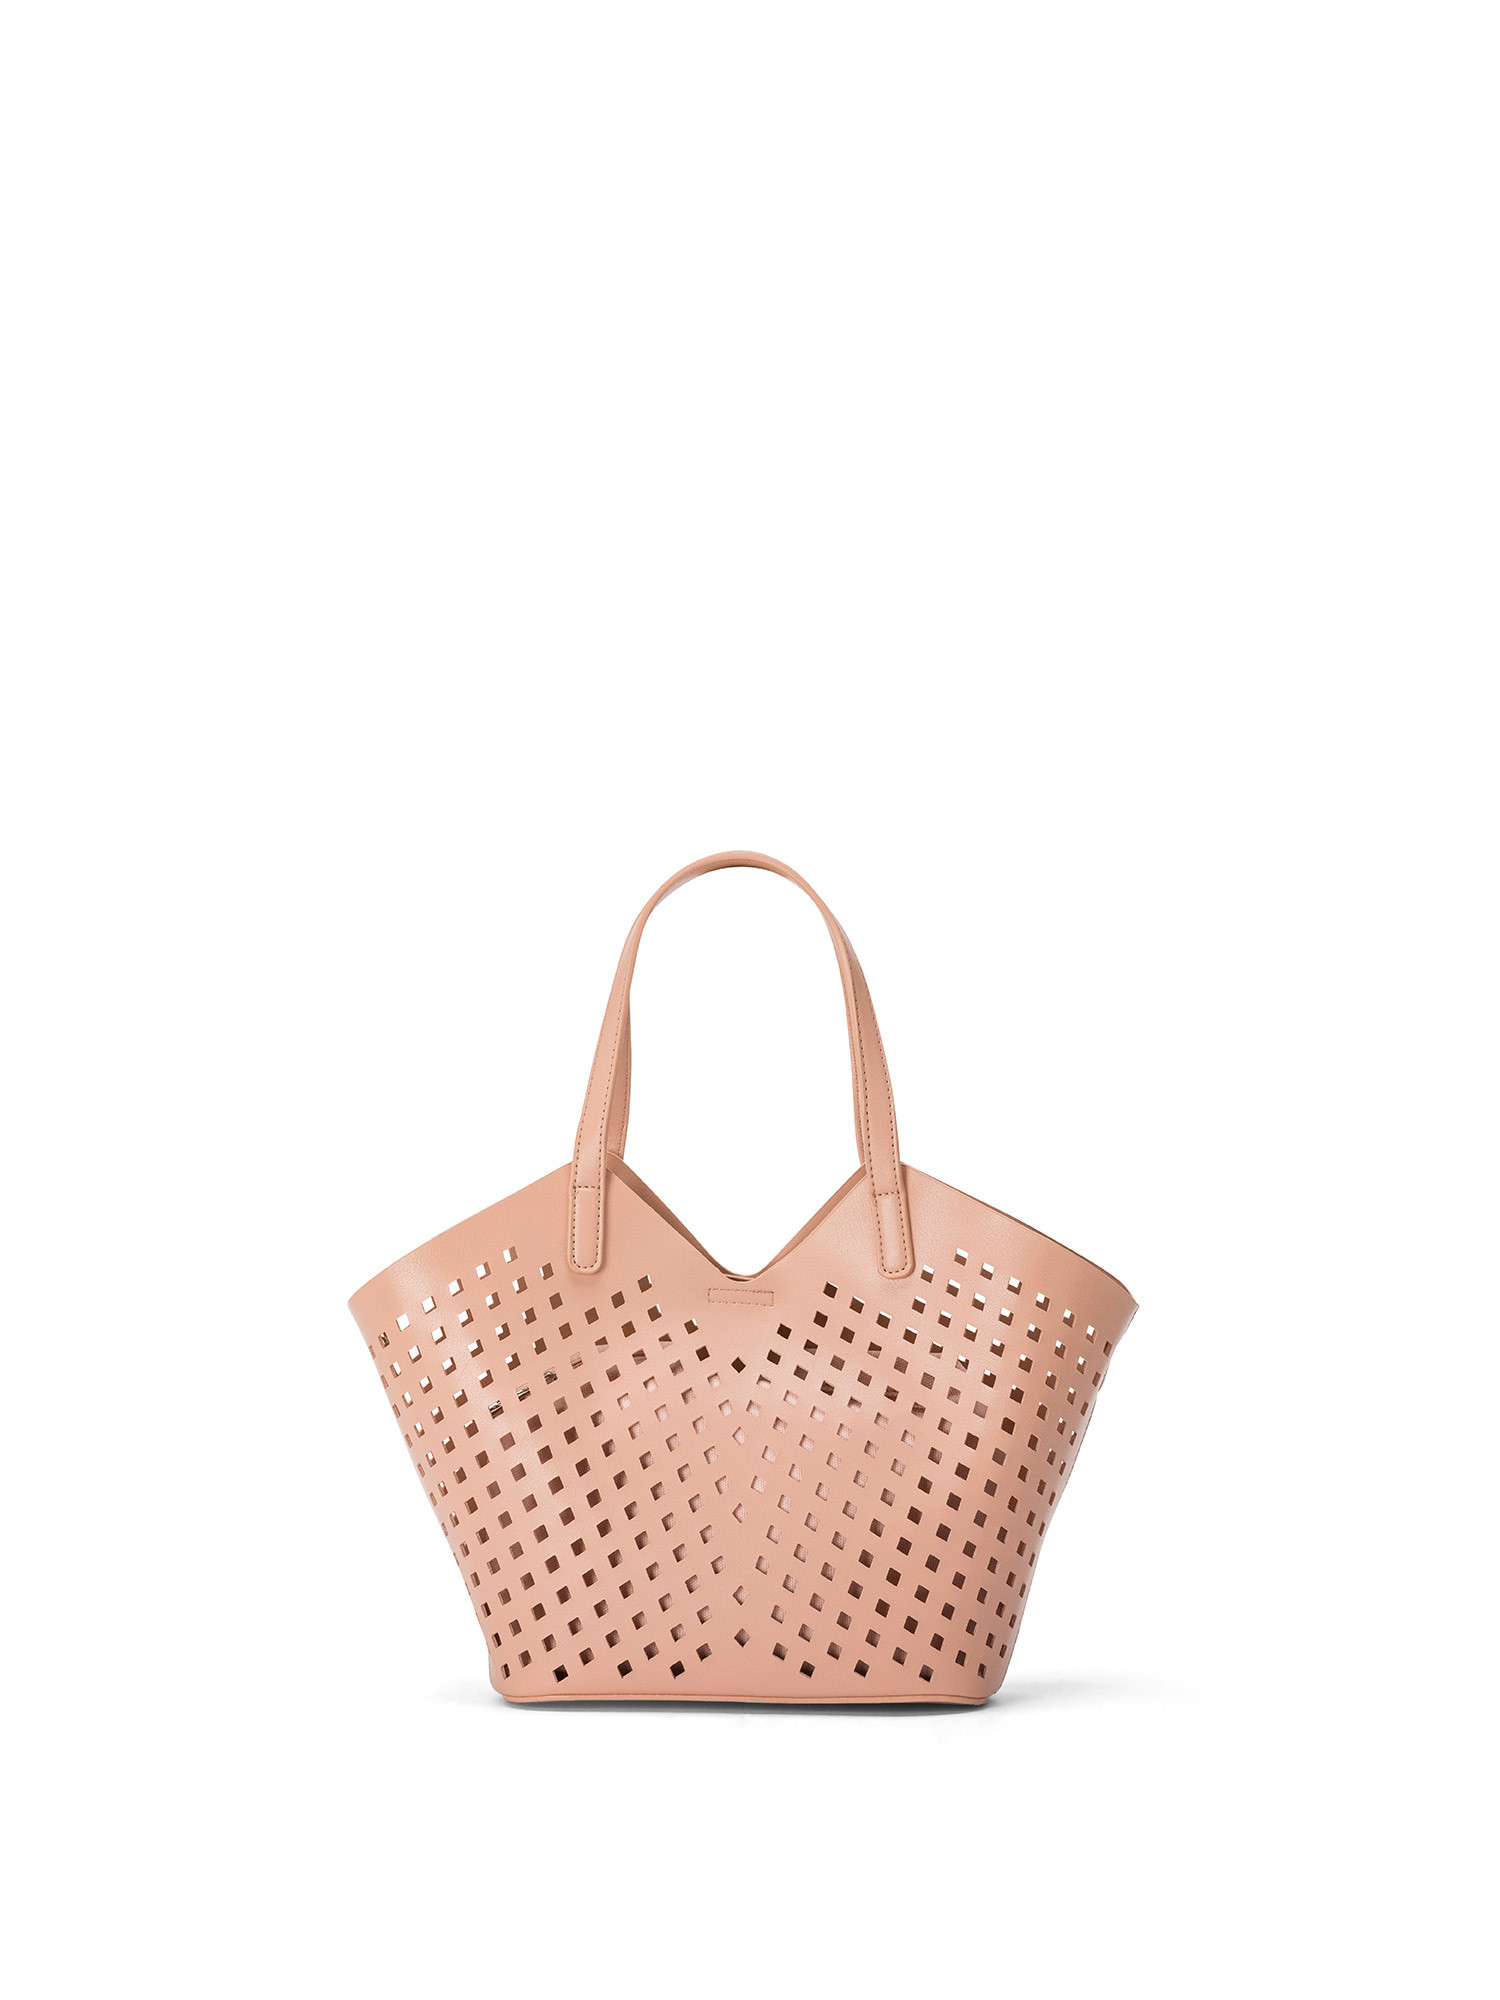 Koan - Perforated shopping bag, Pink, large image number 0